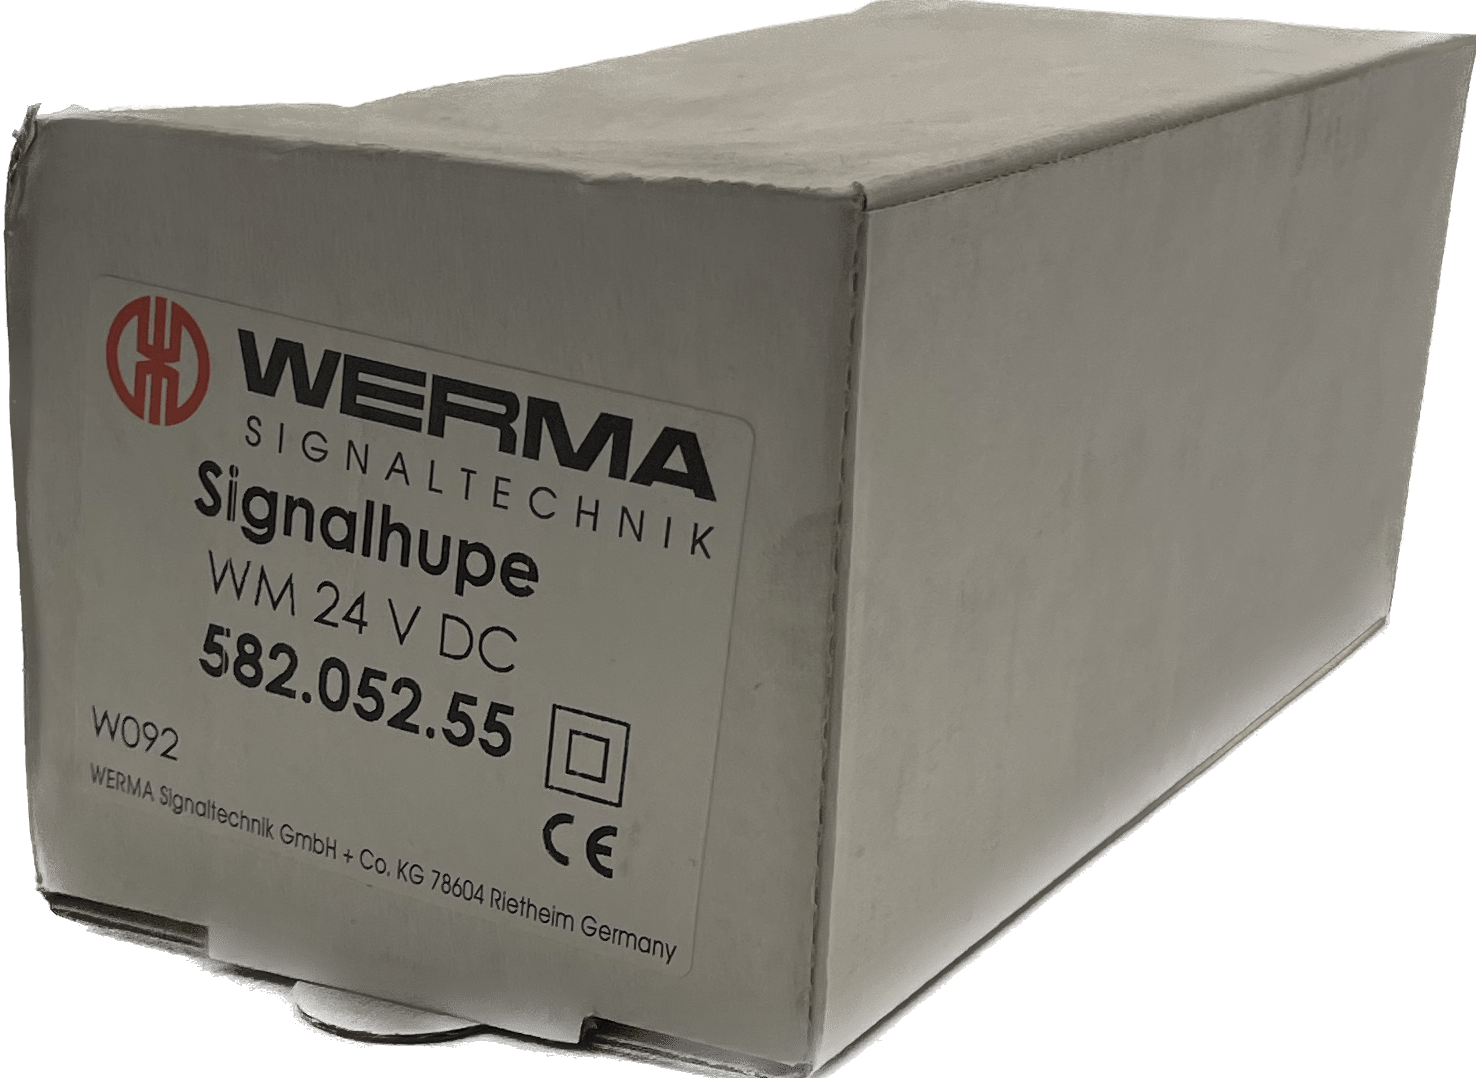 WERMA 582.052.55 Signalhupe WM Dauerton - #product_category# | Klenk Maschinenhandel